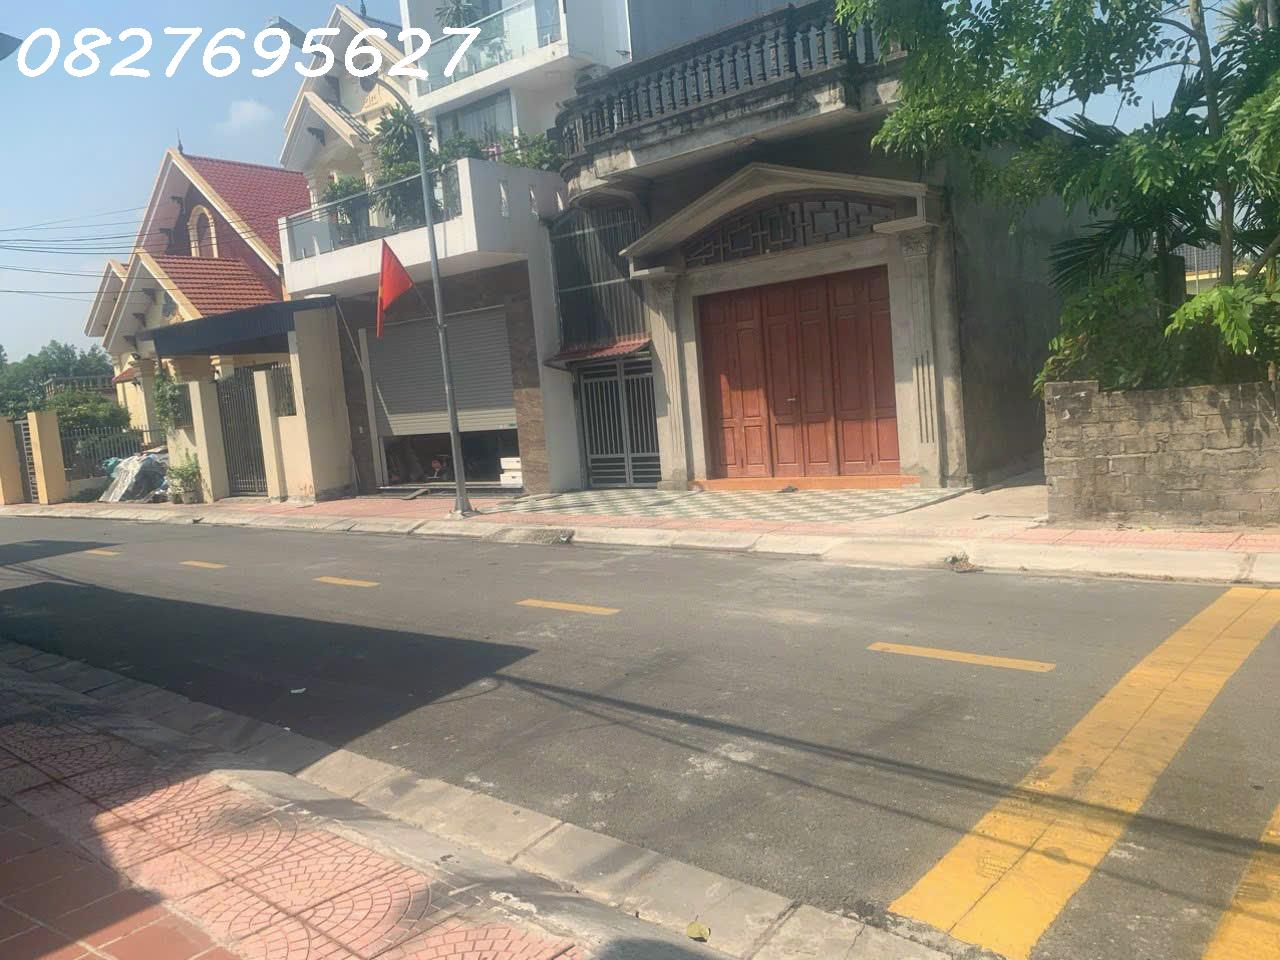 Chuyển nhượng nhà mặt đường tại thôn Kiều Đông, Hồng Thái, An Dương - Caophat 13966246